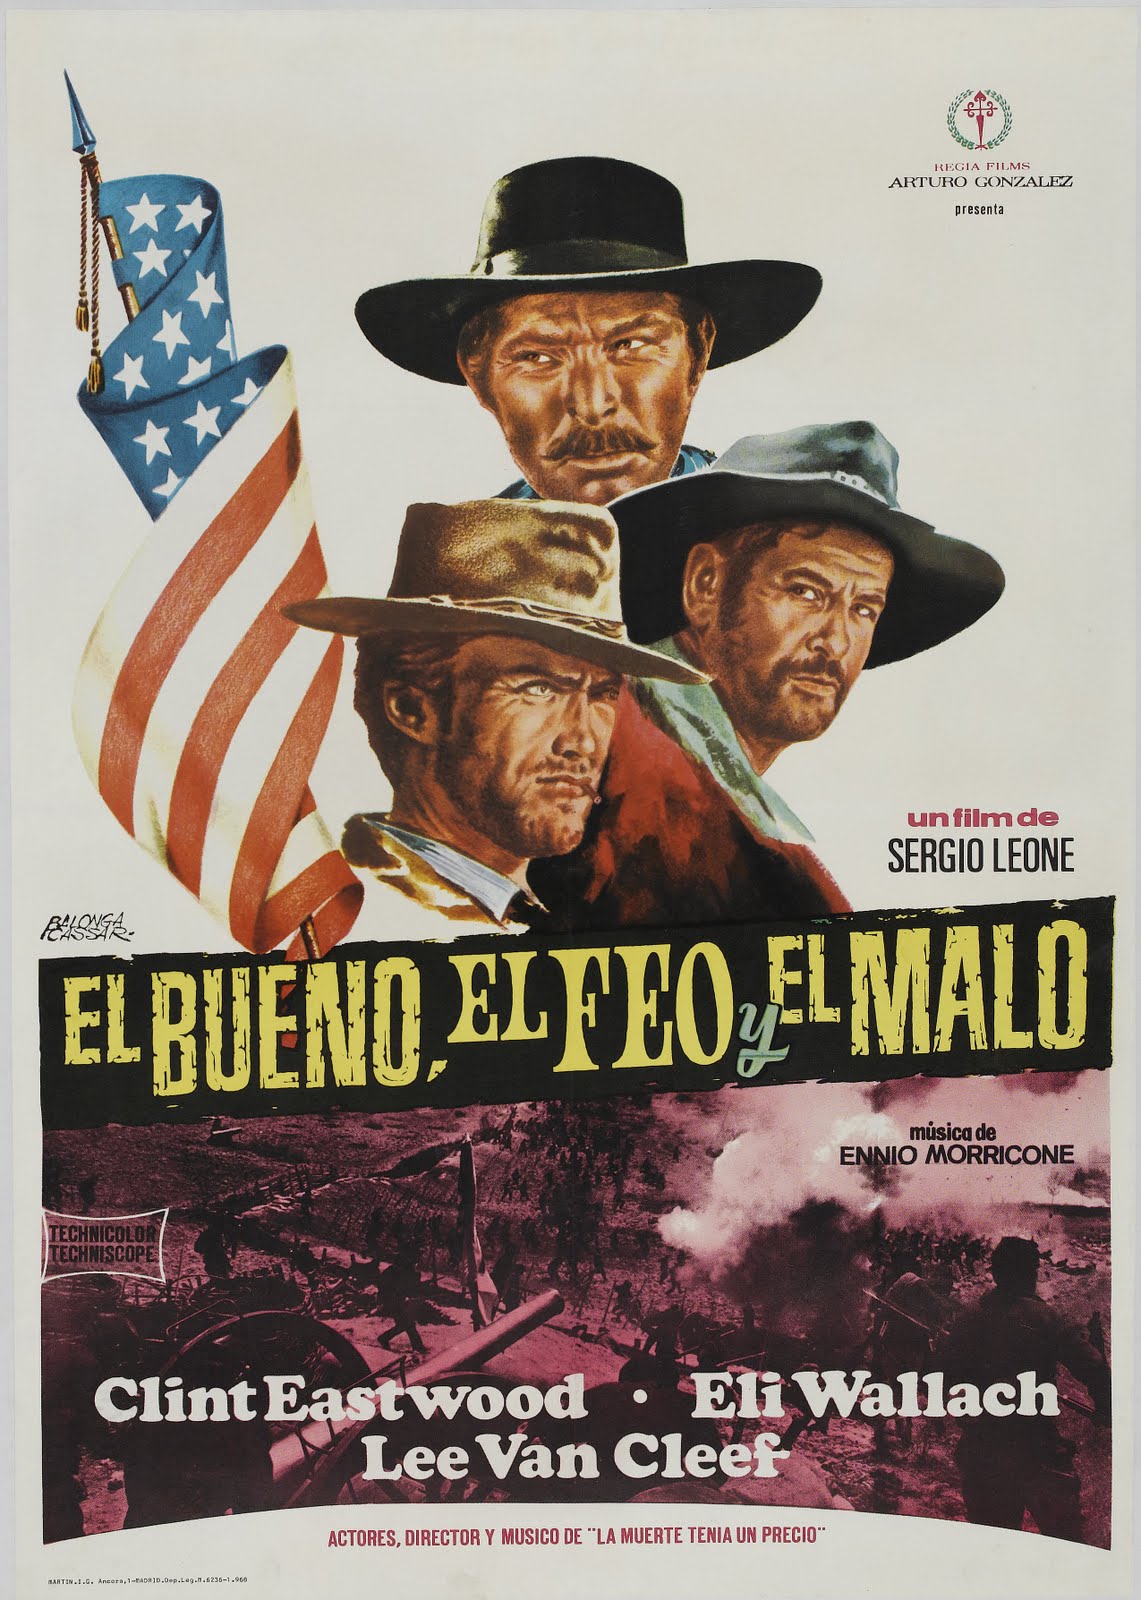 DURANGO MEXICO Y HOLLYWOOD: El Bueno El Feo Y El Malo -(trailers) - El Bueno El Feo Y El Malo Reparto